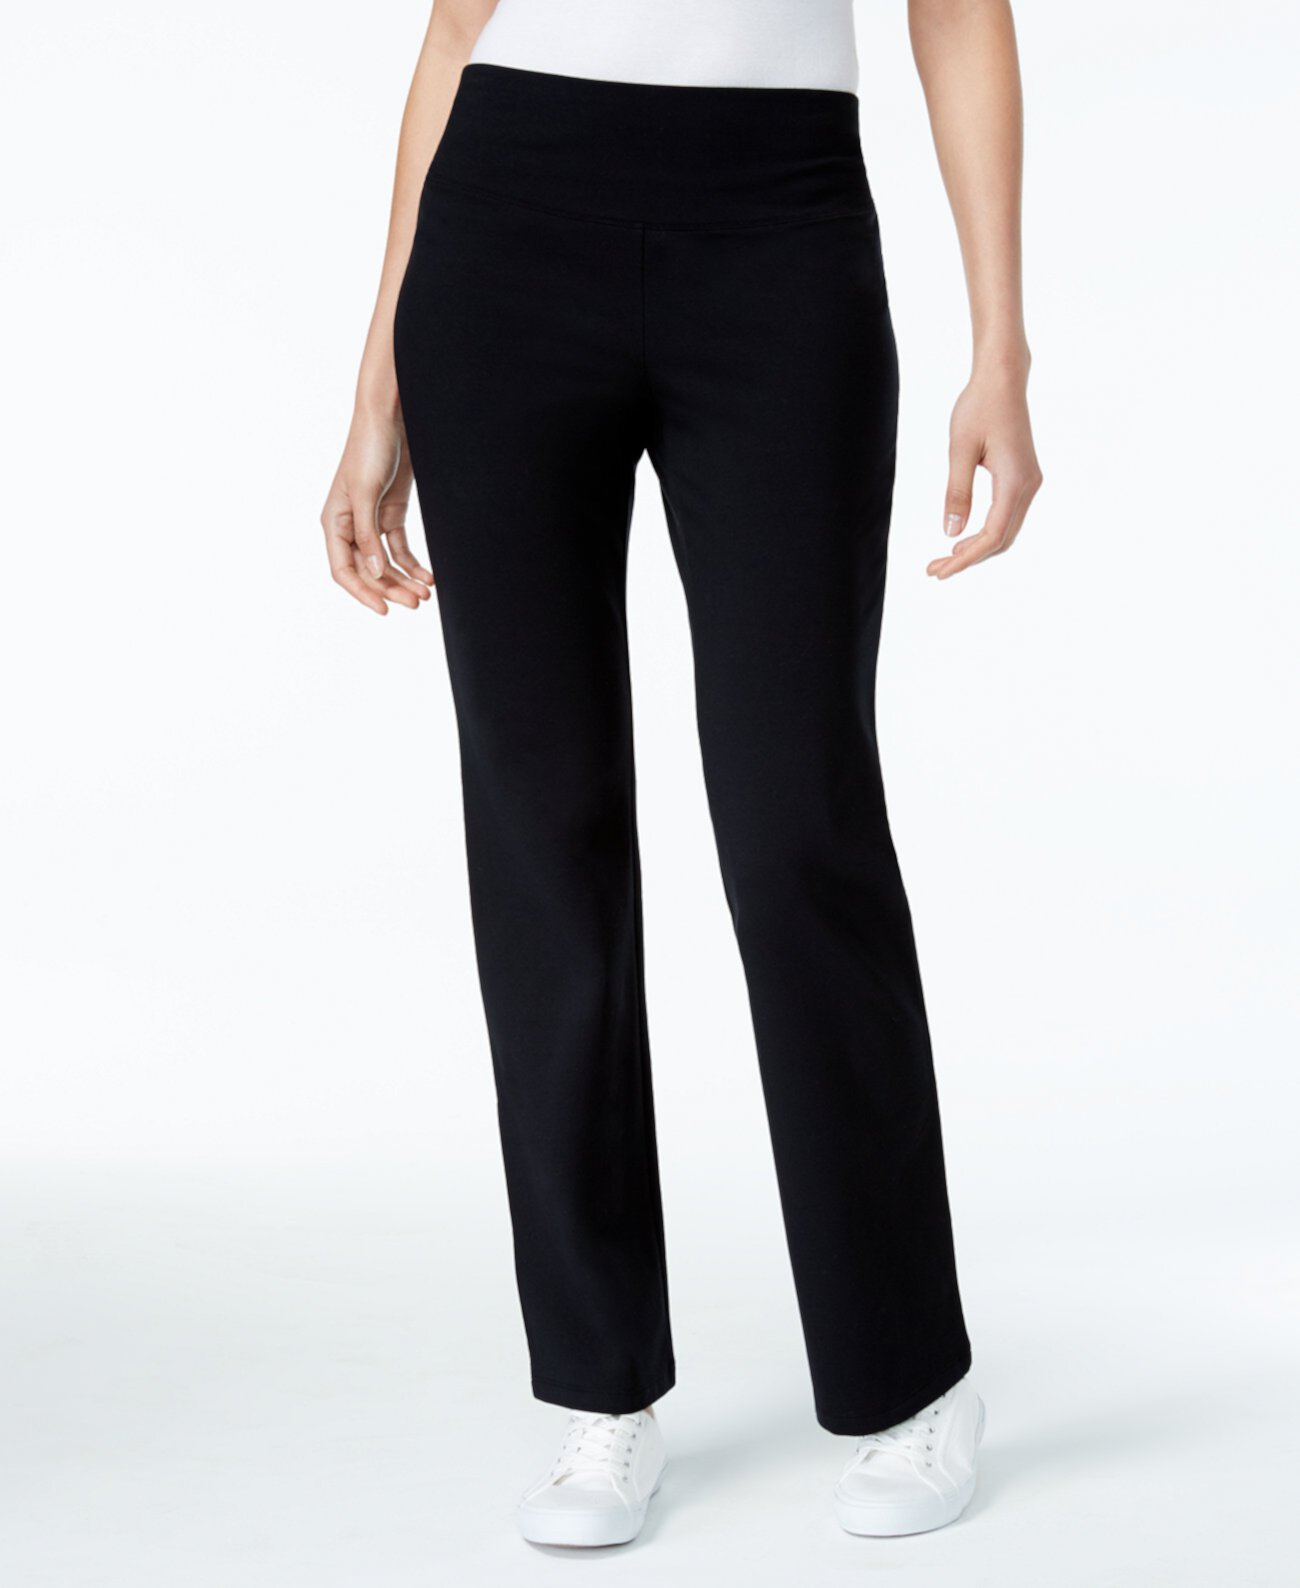 Миниатюрные брюки для йоги с контролем живота, созданные для Macy's Style & Co